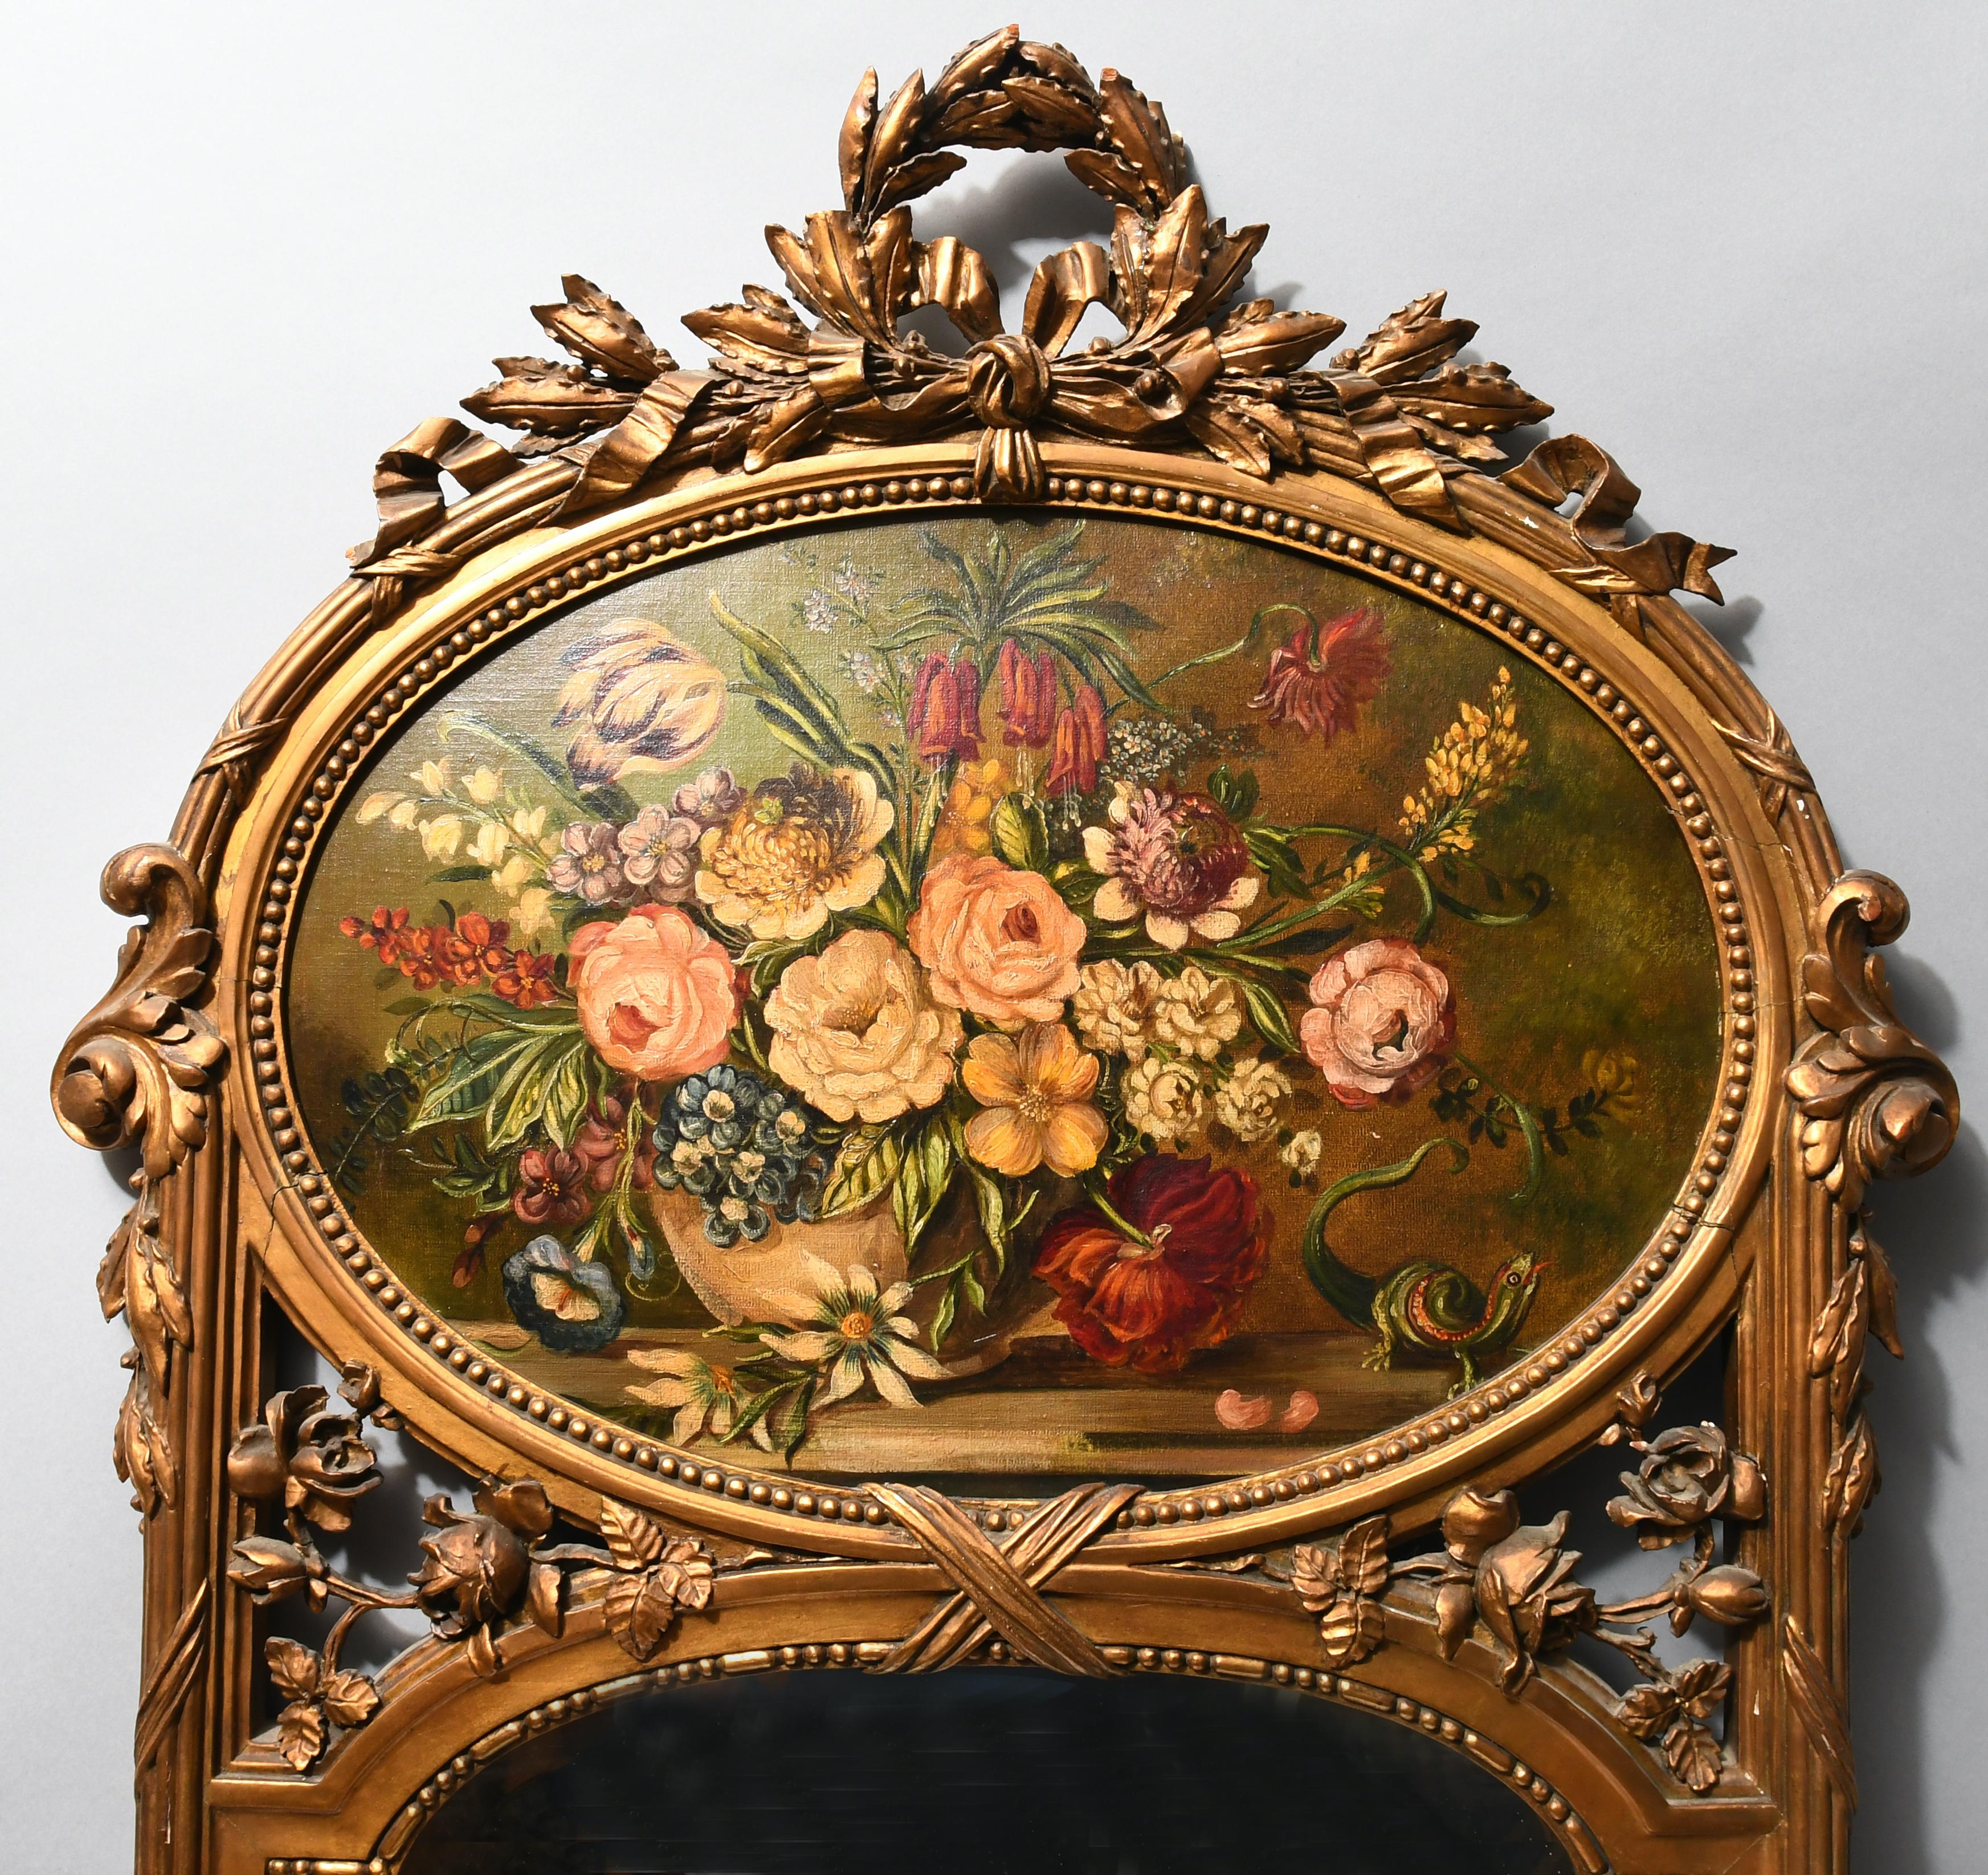 Miroir mural en bois doré en forme d'arc agrémenté d'une guirlande de feuilles de laurier formant une couronne en guise de fleuron. Le cadre autour du miroir et de la peinture est cannelé et quelques feuilles d'acanthe y sont fixées. Entre le